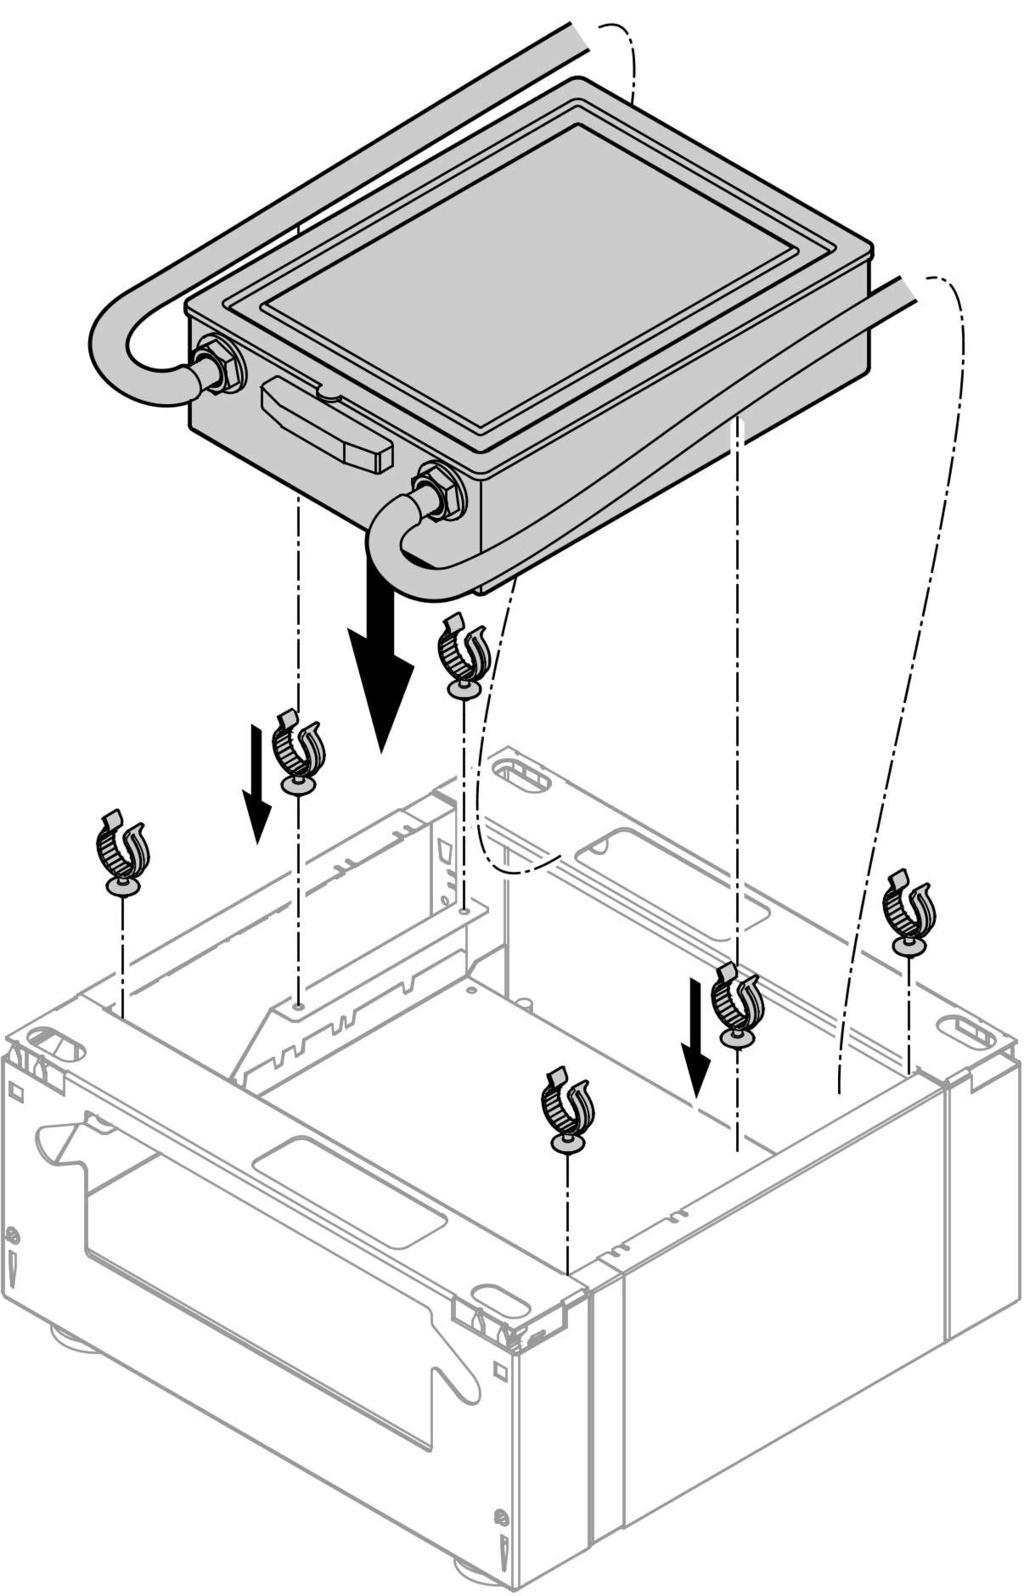 Heizkessel aufstellen und ausrichten (Fortsetzung) Falls eine Neutralisationsanlage angeschlossen wird, kann diese im Untergestell untergebracht werden.